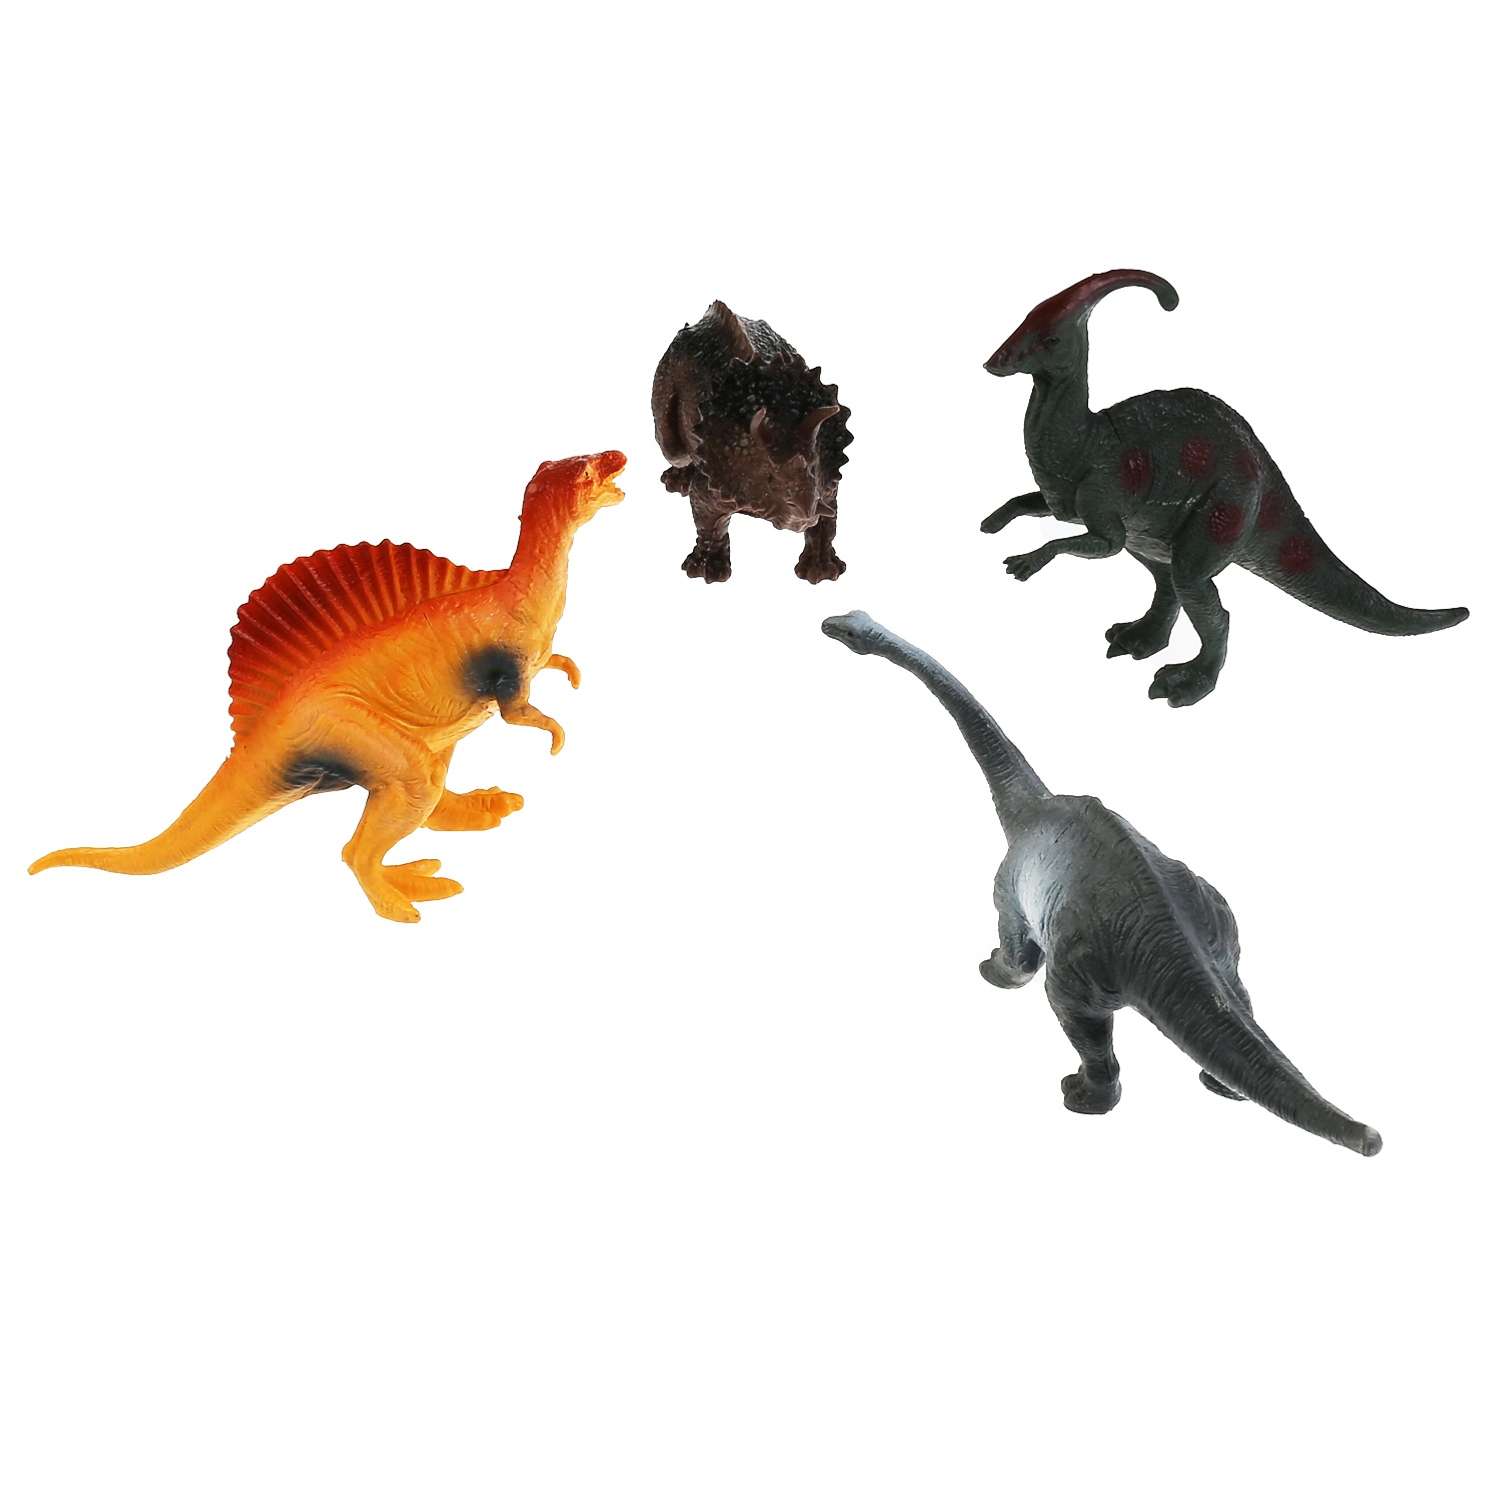 Игрушка Играем Вместе пластизоль Динозавры 4 шт - фото 2